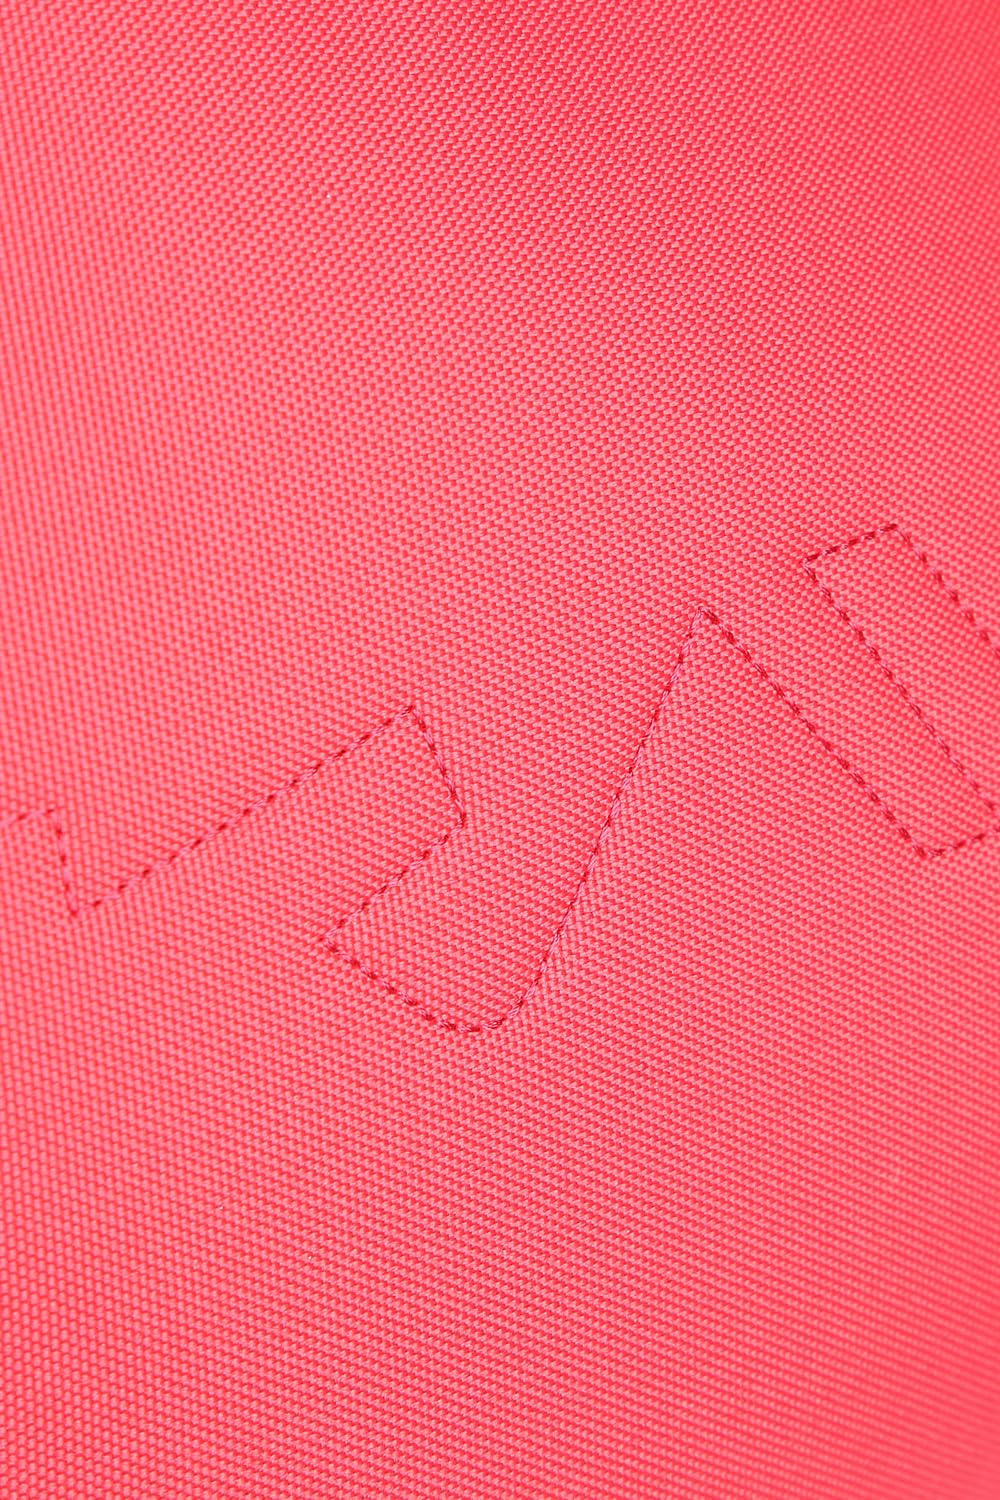 KAVU Mini Rope Sling Pack with Adjustable Rope Shoulder Strap